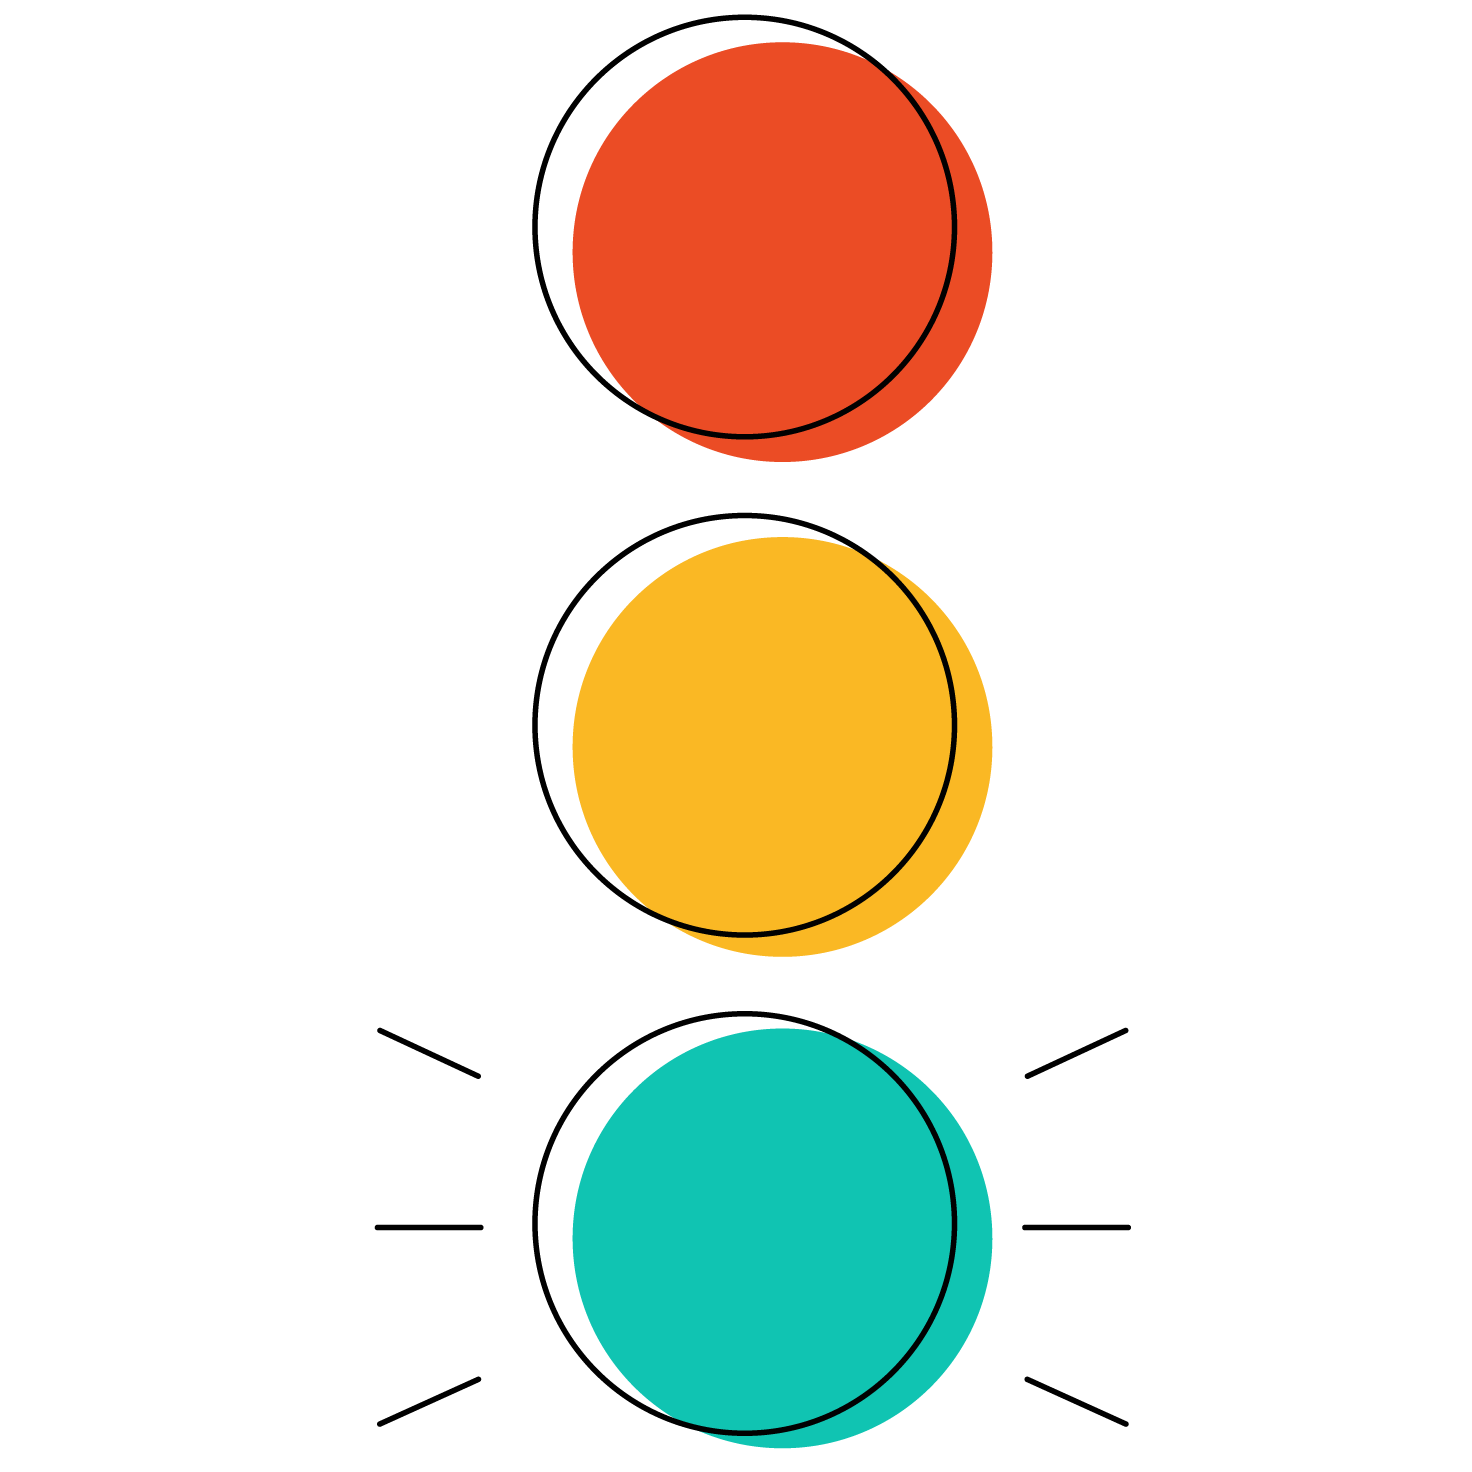 Traffic light illustration